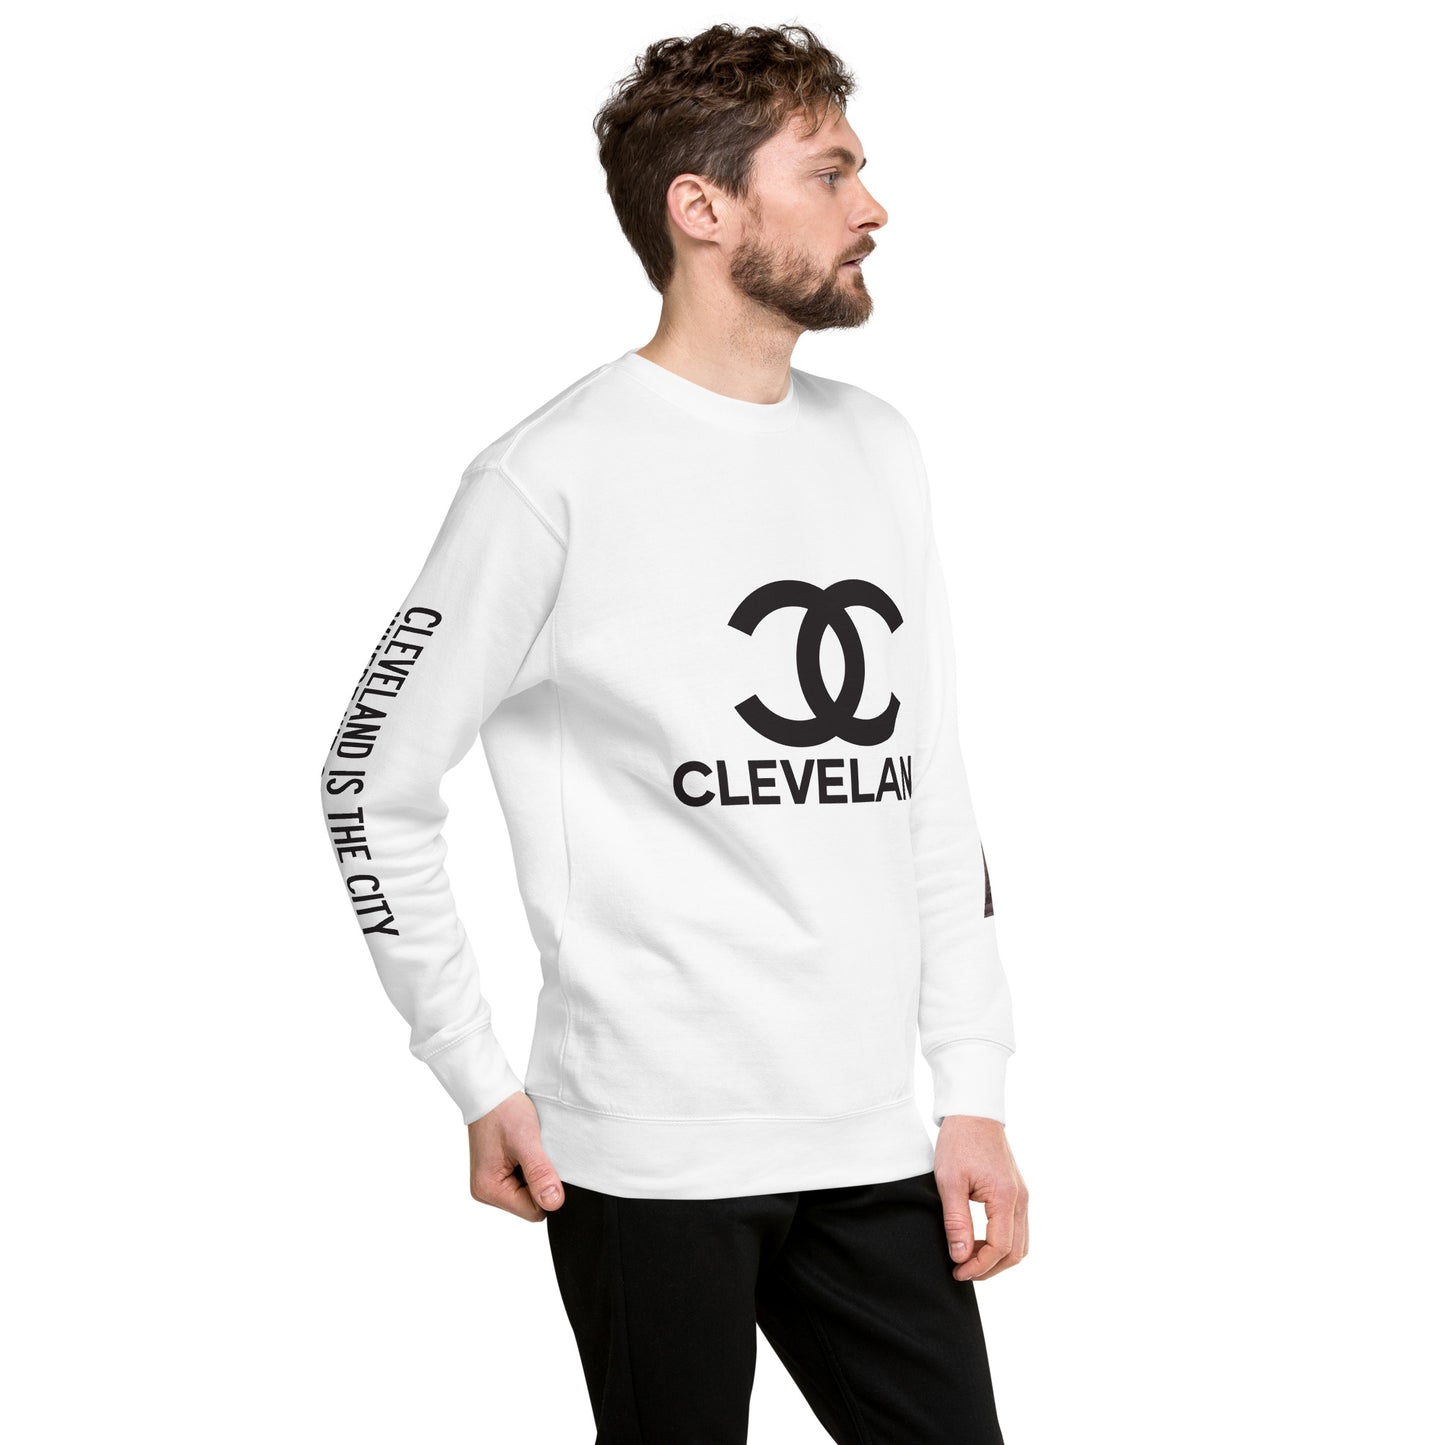 Designer Cleveland Sweatshirt